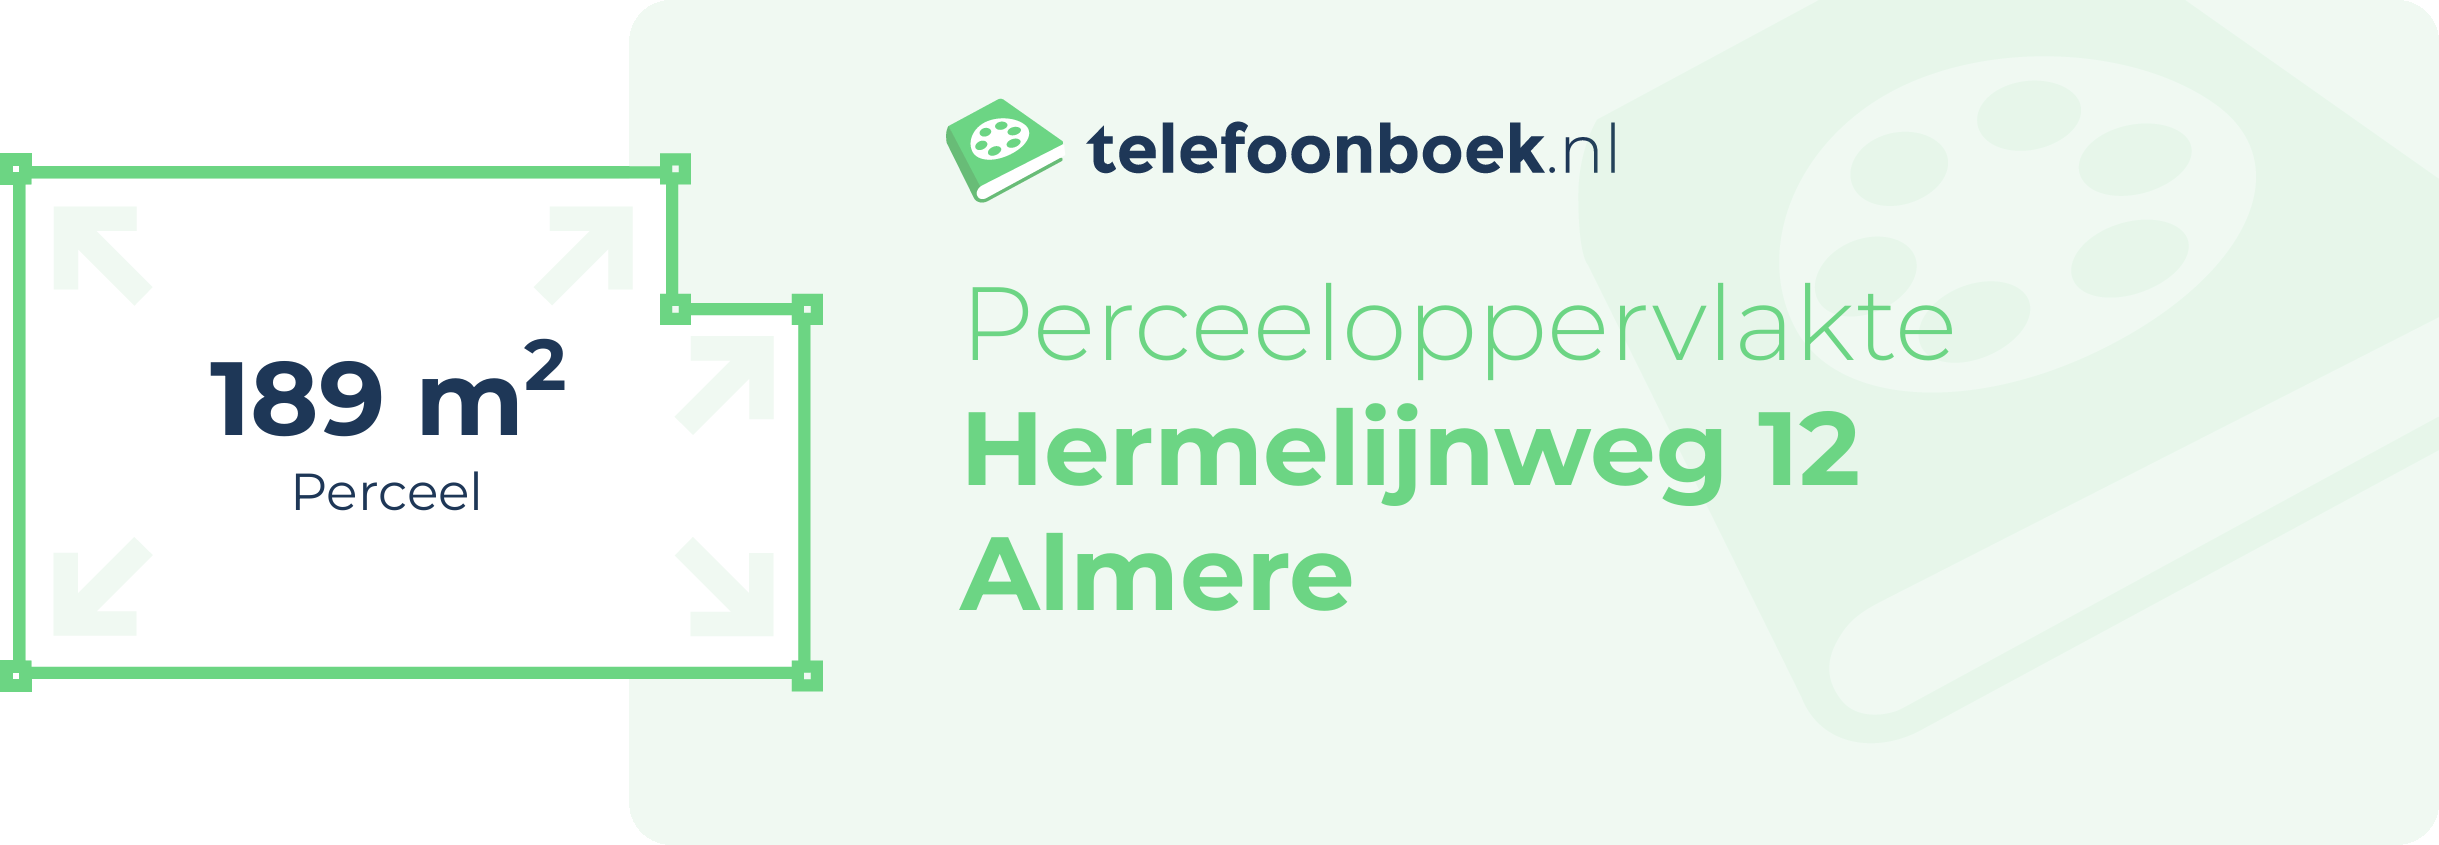 Perceeloppervlakte Hermelijnweg 12 Almere